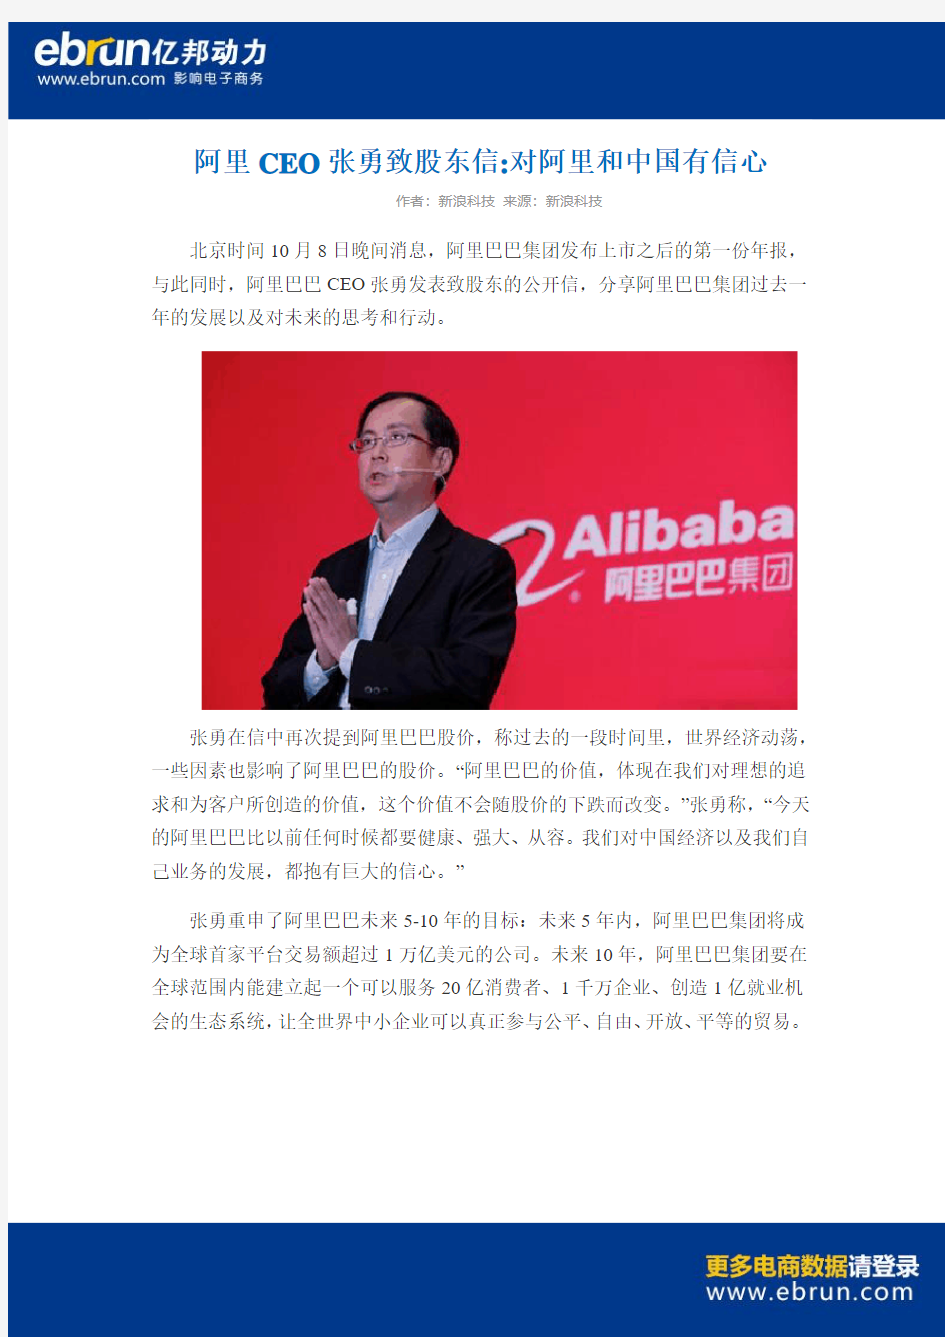 阿里CEO张勇致股东信 对阿里和中国有信心